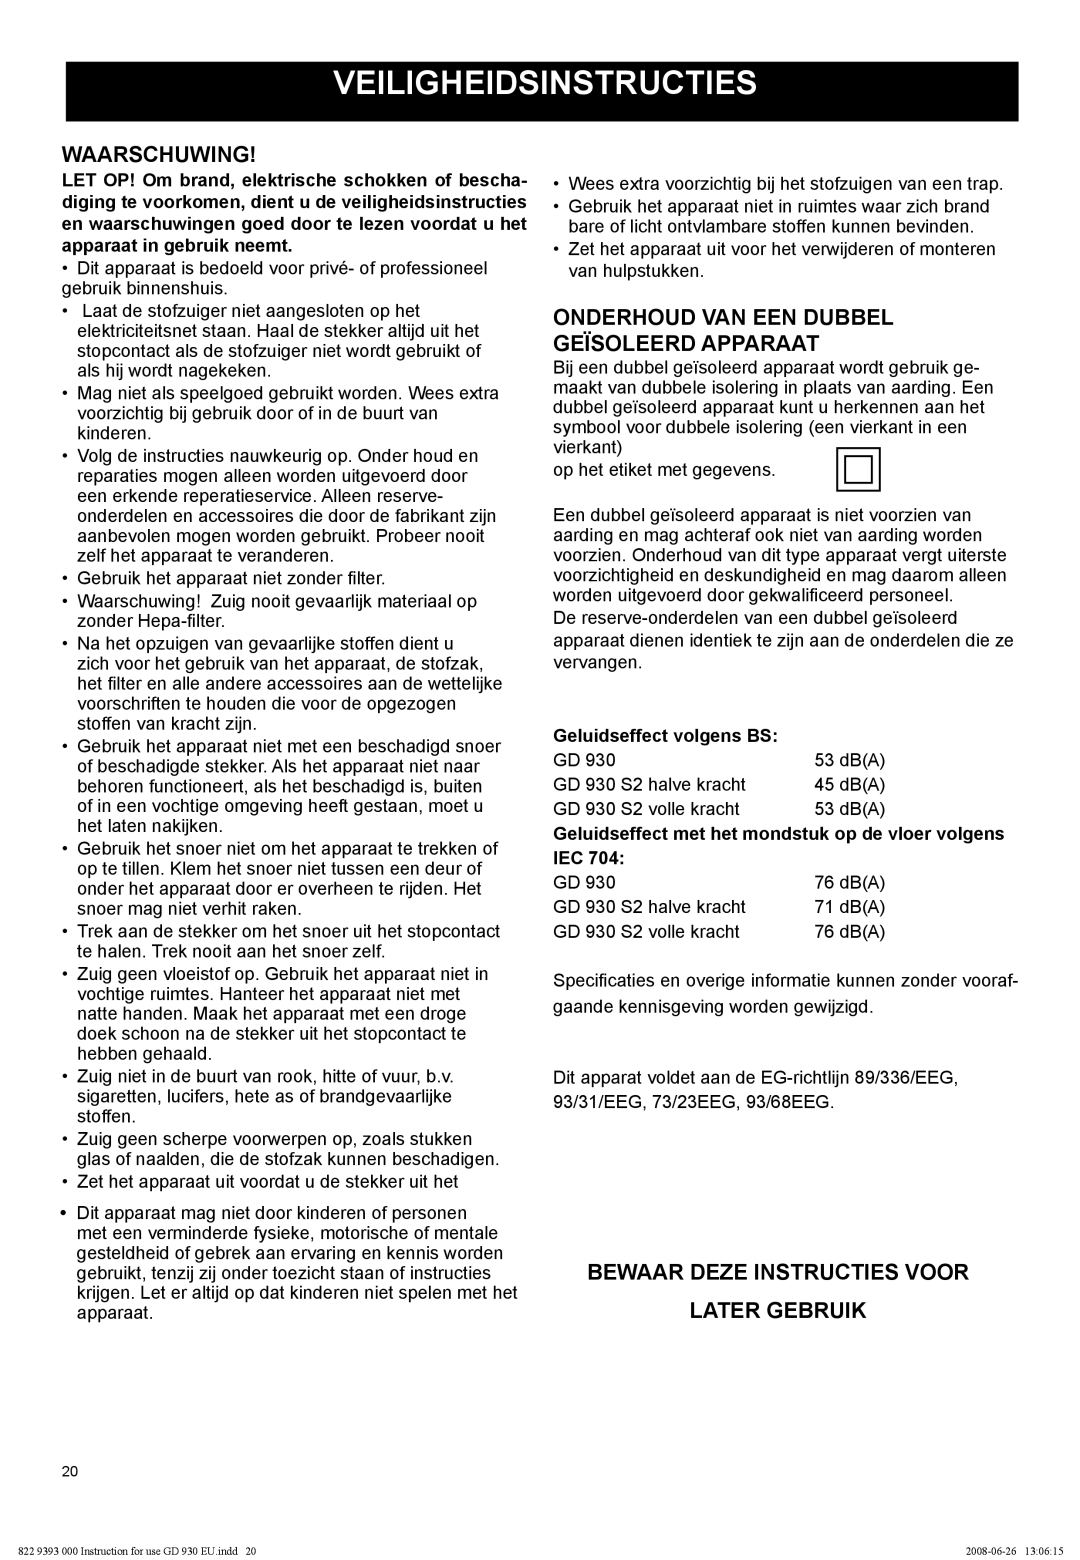 Nilfisk-Advance America GD 930 manual Veiligheidsinstructies, Waarschuwing, Onderhoud Van Een Dubbel Geïsoleerd Apparaat 